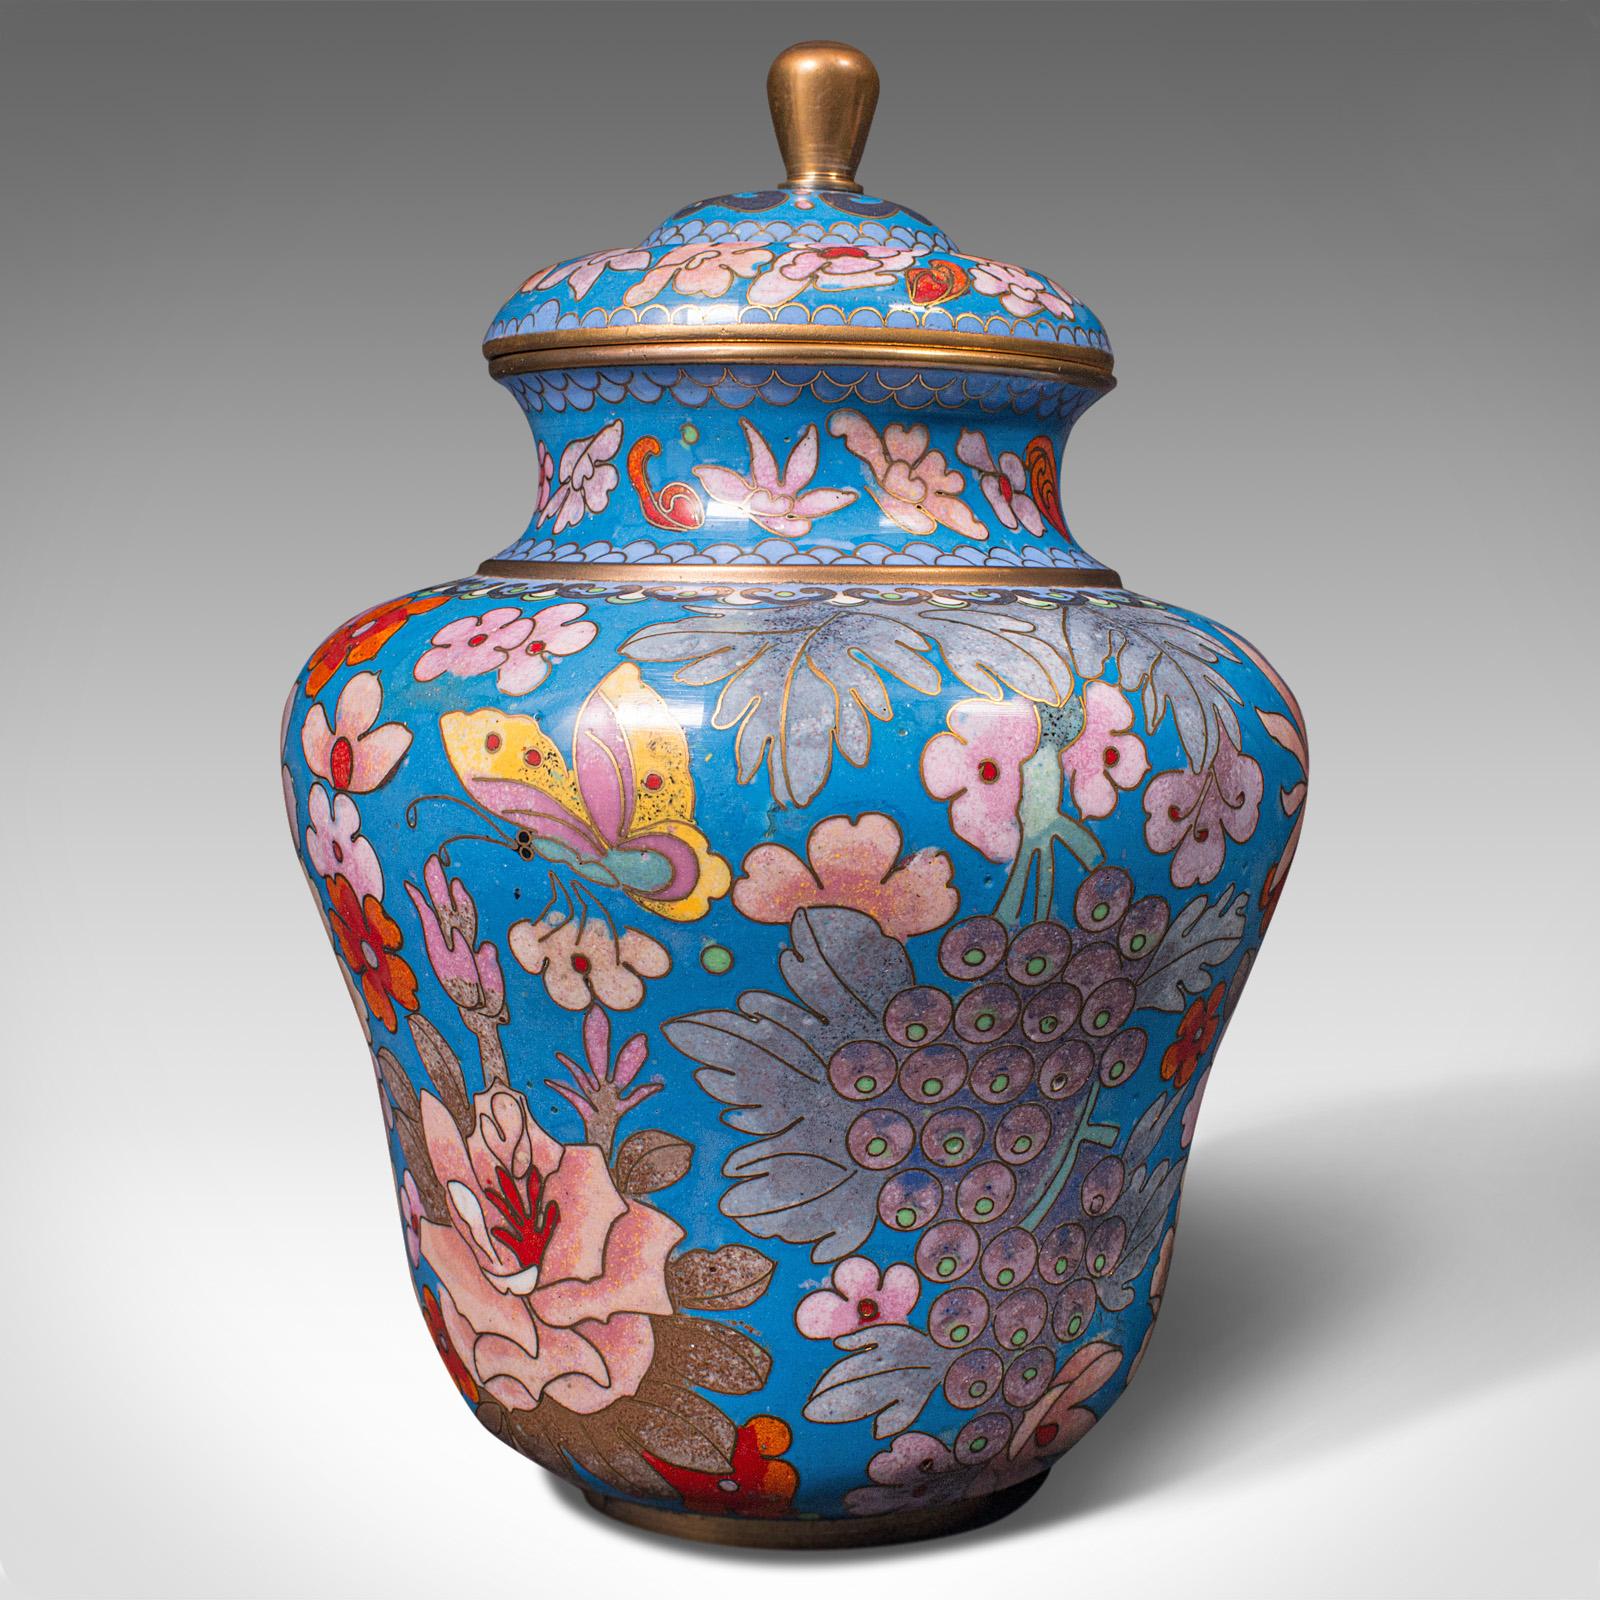 Pair of Antique Cloisonne Spice Jars, English Ceramic, Decorative Pot, Victorian For Sale 3